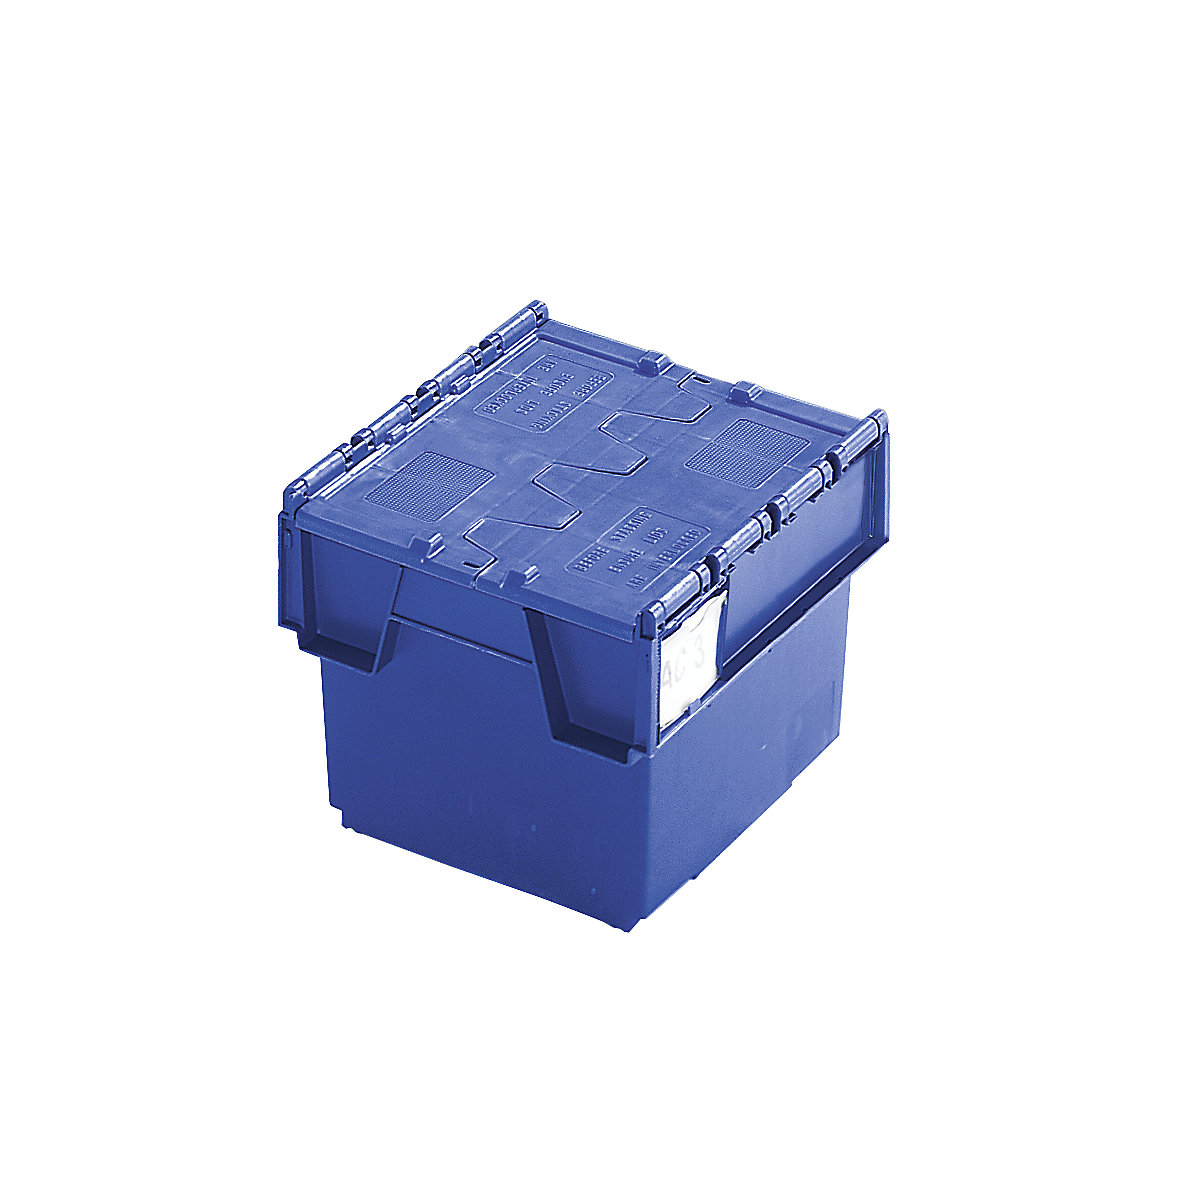 Recipiente empilhável e retornável com tampa articulada, volume 20 litros, CxLxA 400 x 300 x 252 mm, azul